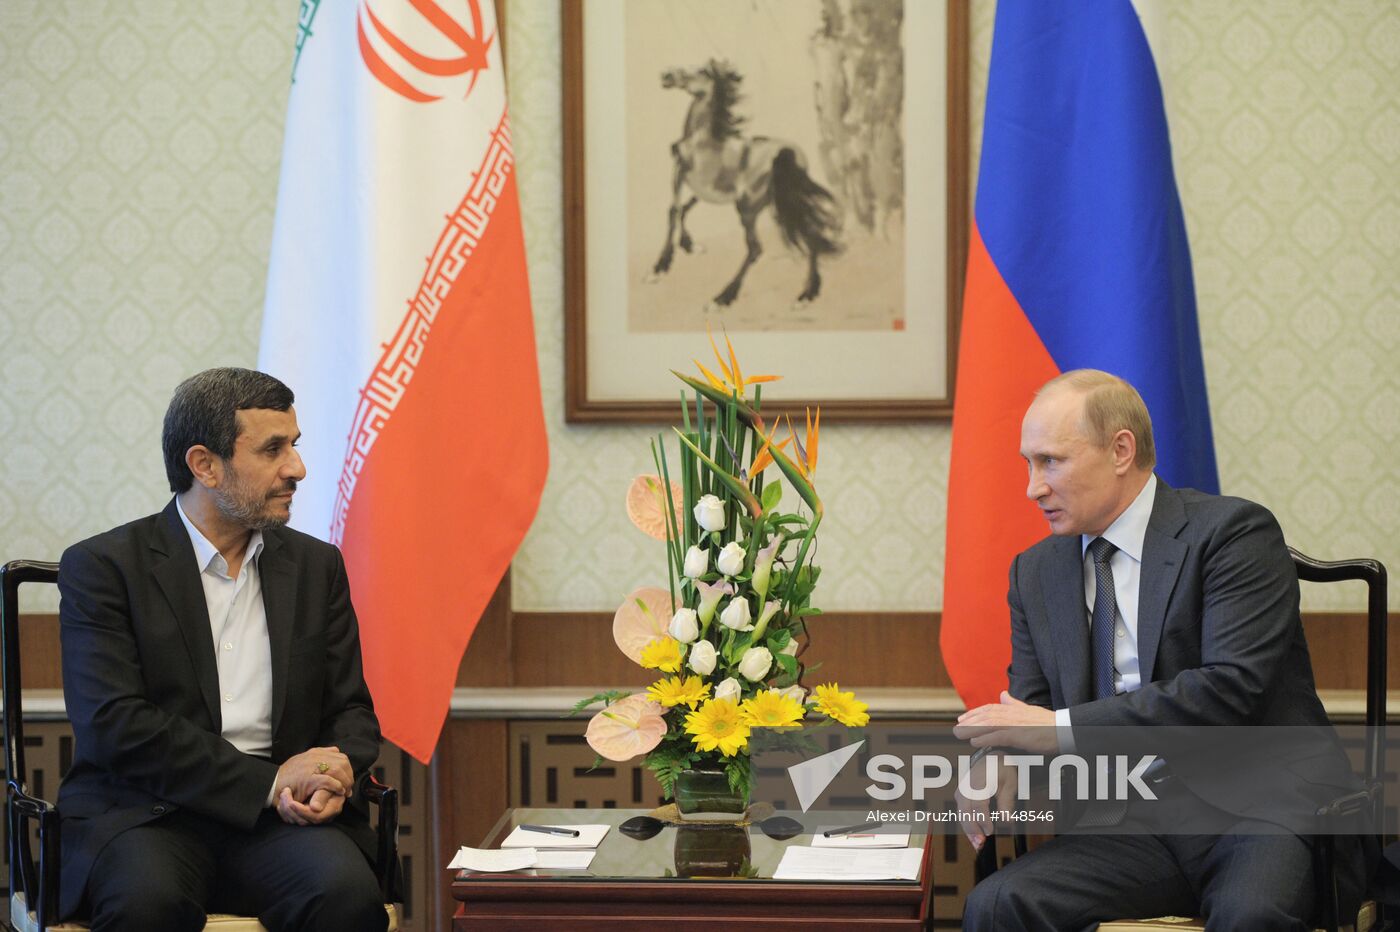 Vladimir Putin talks with Mahmoud Ahmadinejad